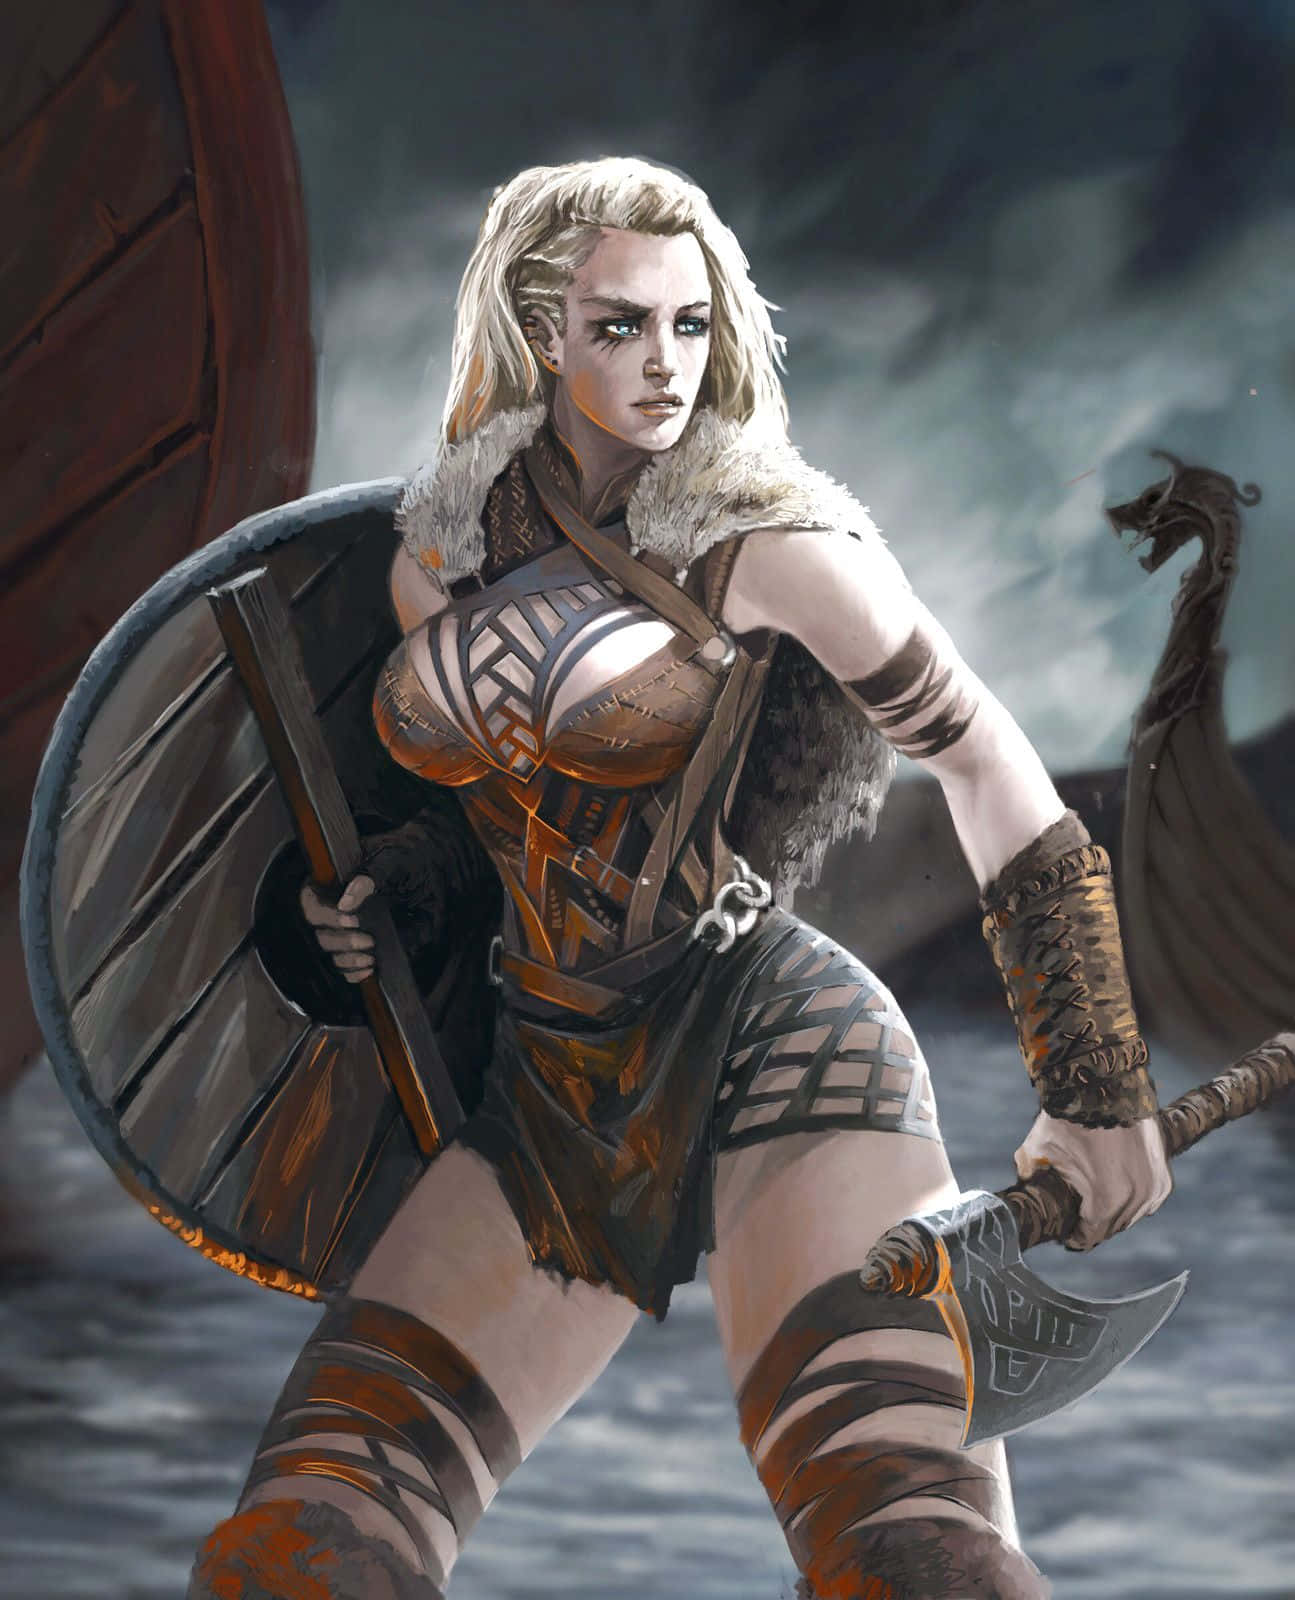 Image  "Female Viking Warriors Bravely Defend Their Homeland"